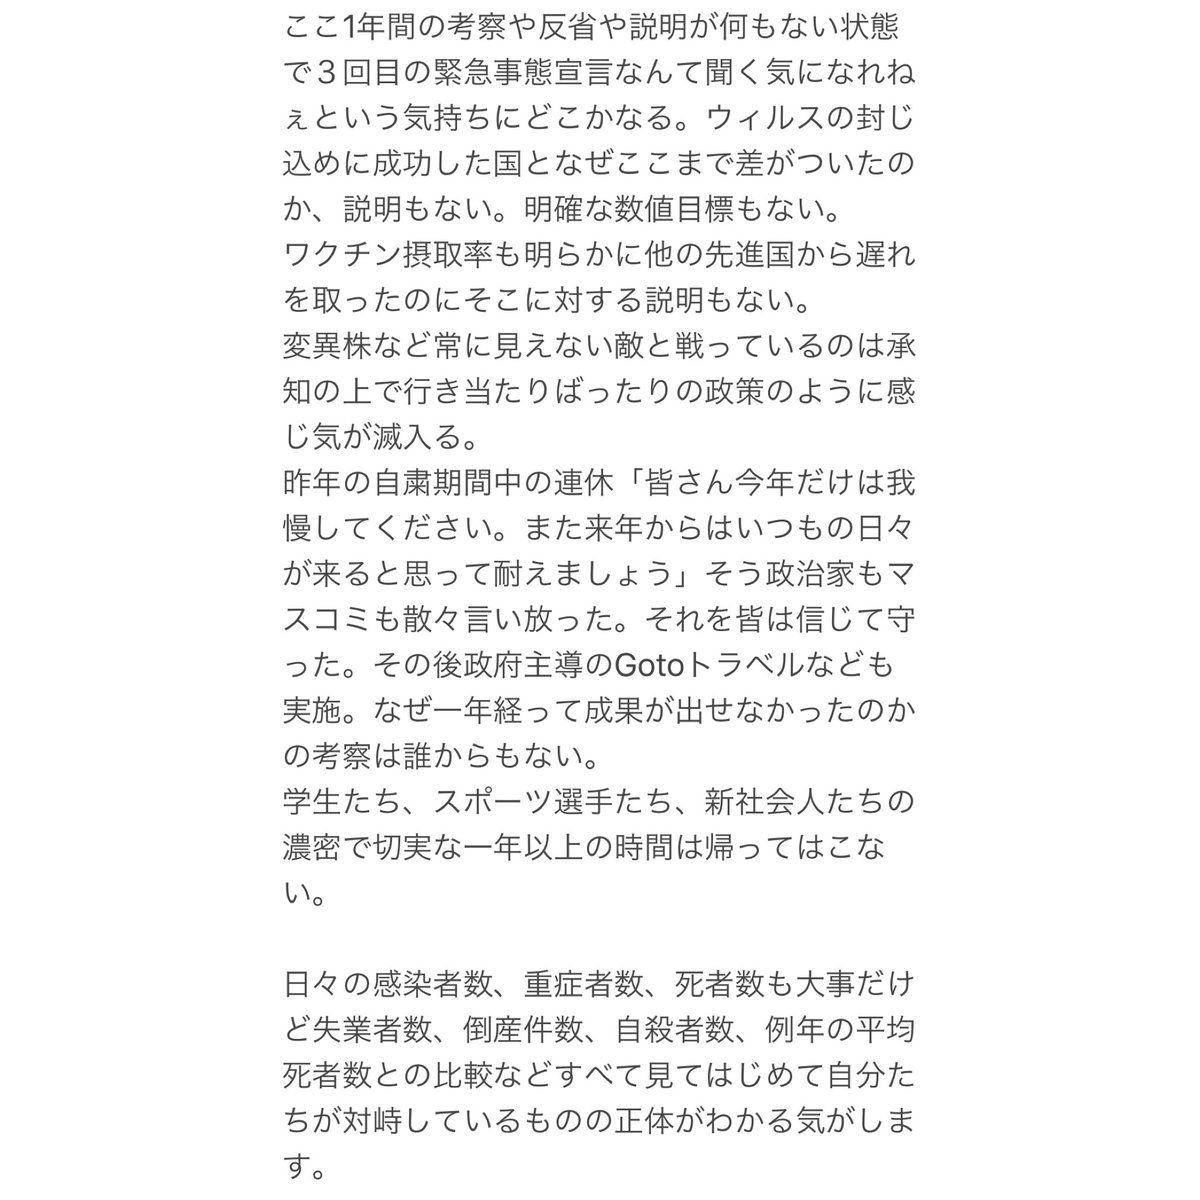 野田洋次郎、緊急事態宣言で政府の対応に私見「聞く気になれねぇ」